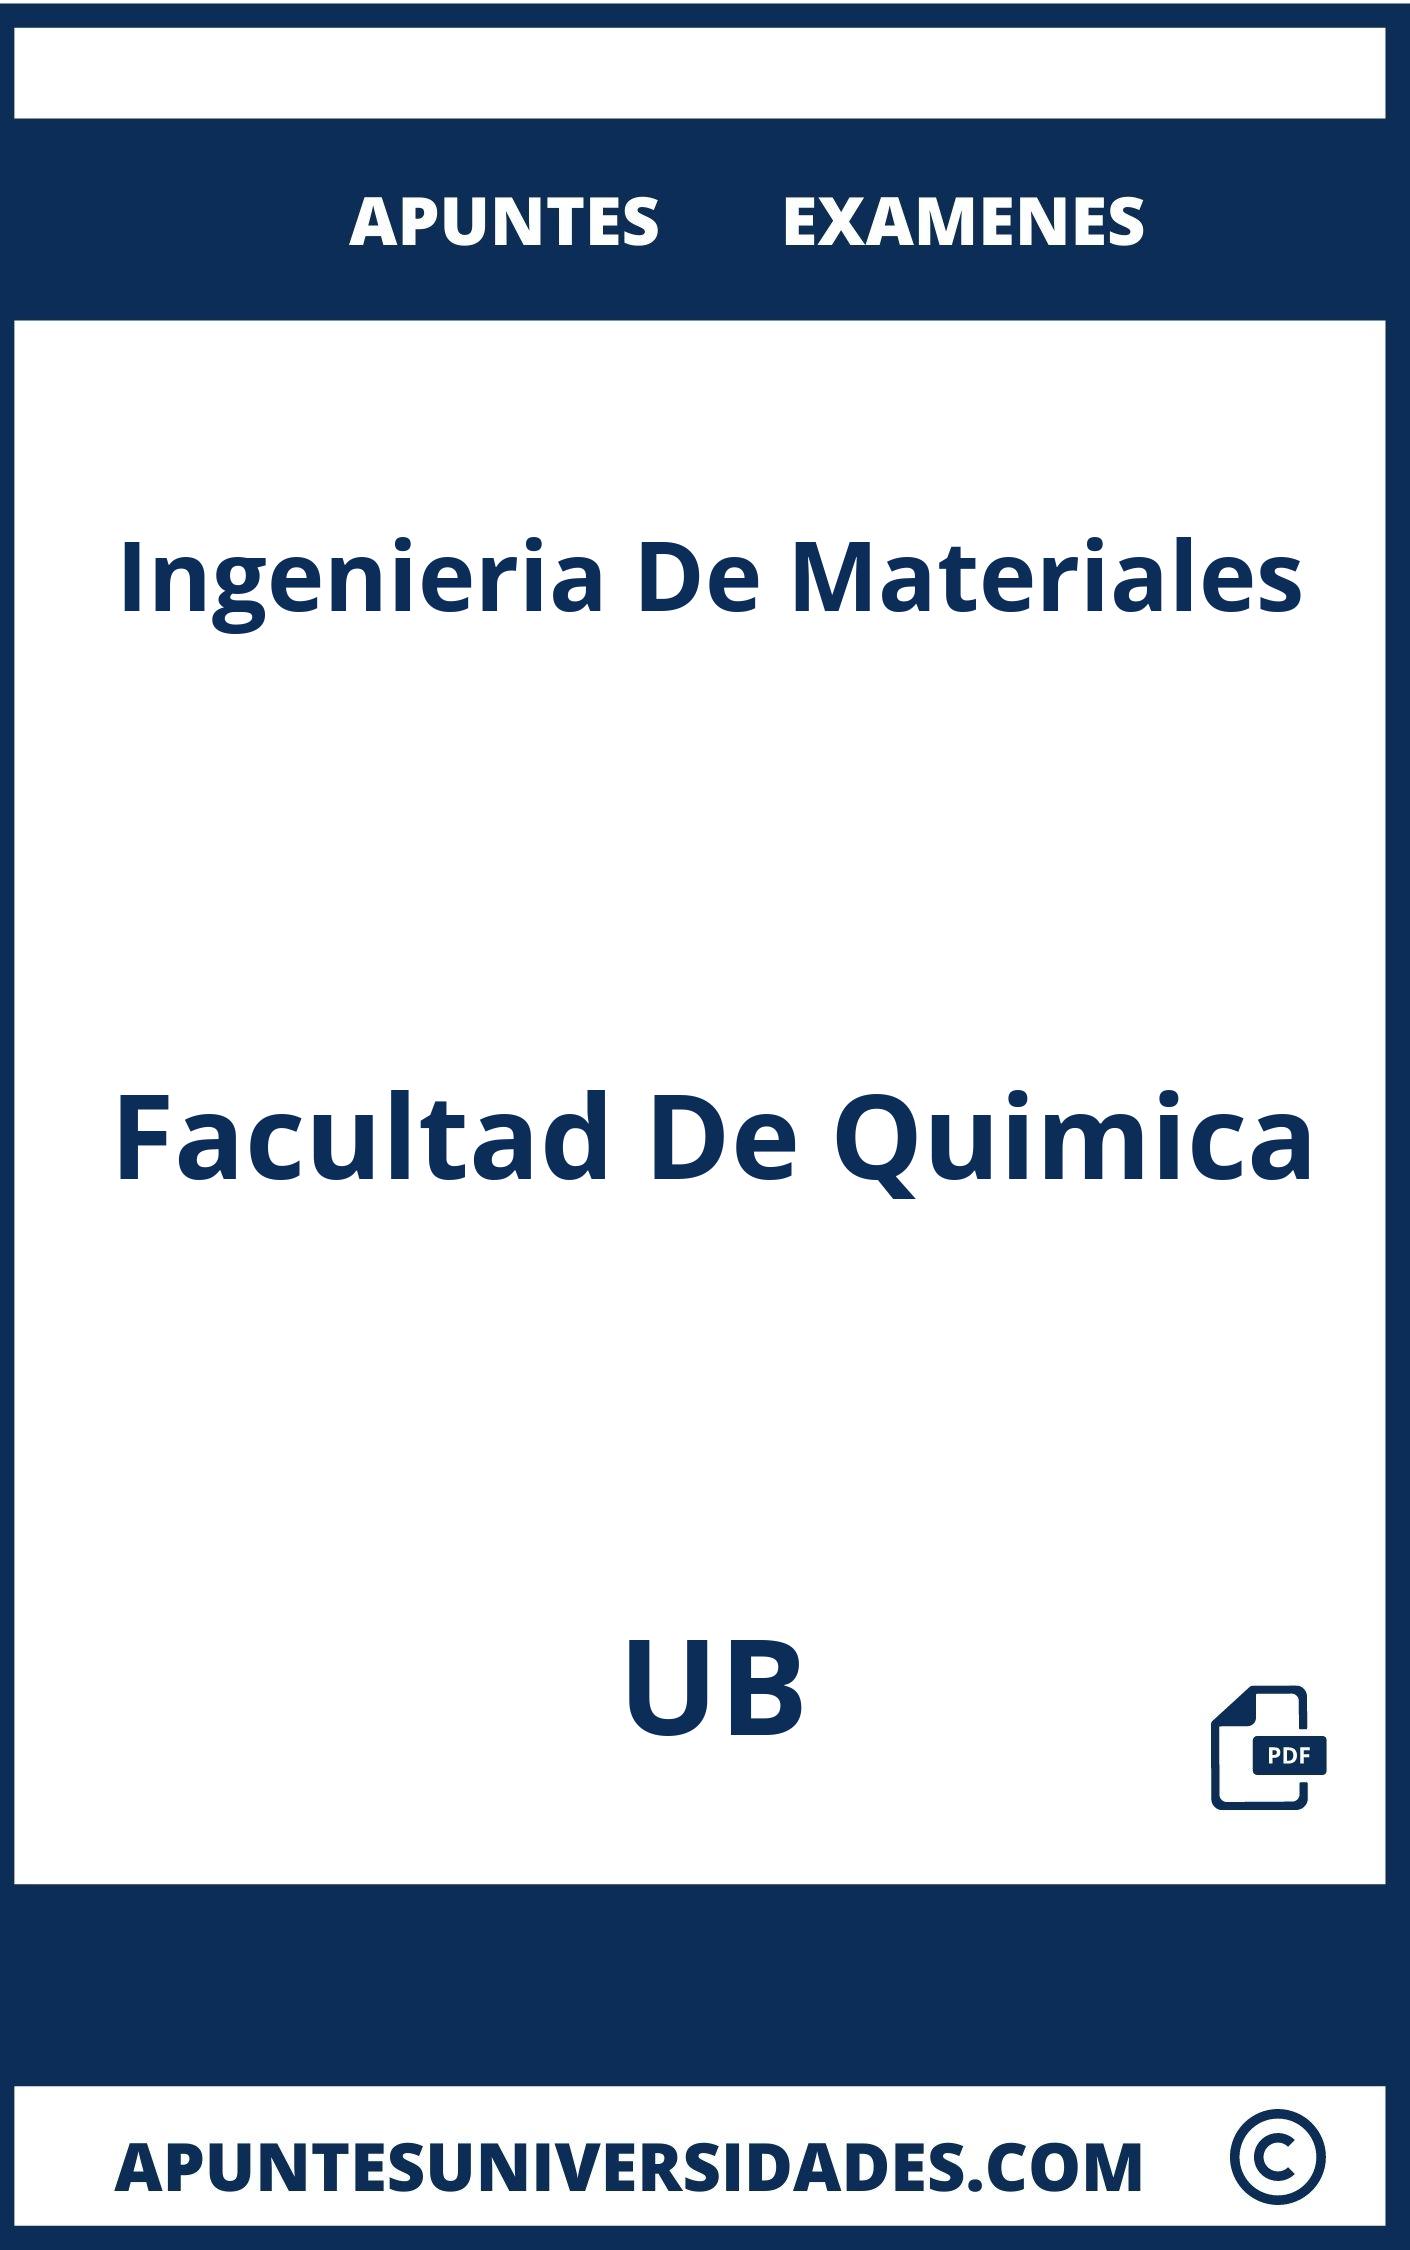 Examenes Apuntes Ingenieria De Materiales UB